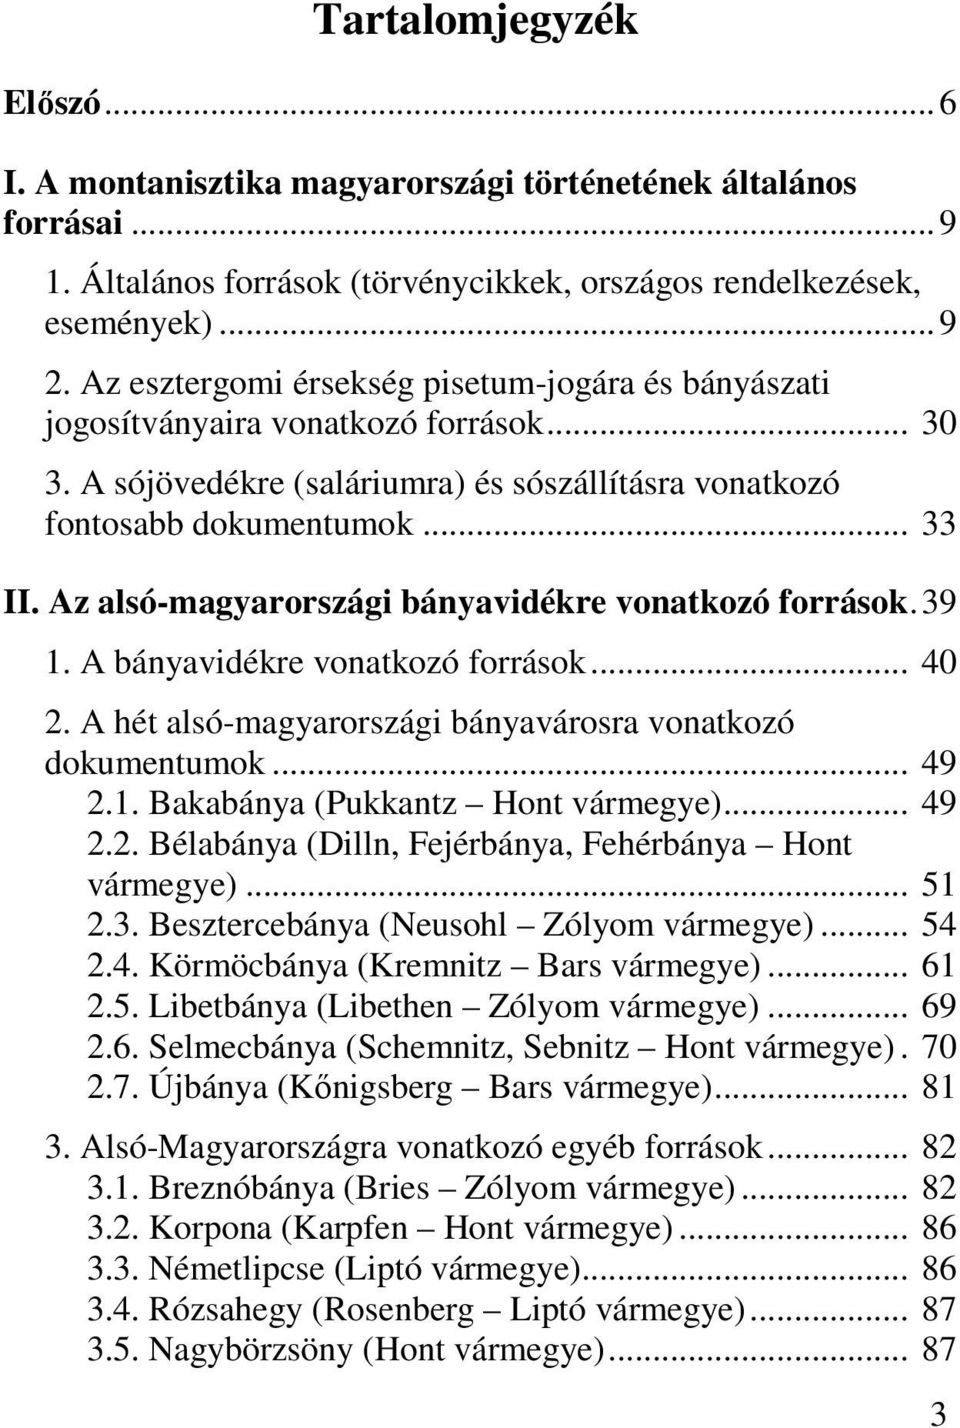 Az alsó-magyarországi bányavidékre vonatkozó források.39 1. A bányavidékre vonatkozó források... 40 2. A hét alsó-magyarországi bányavárosra vonatkozó dokumentumok... 49 2.1. Bakabánya (Pukkantz Hont vármegye).